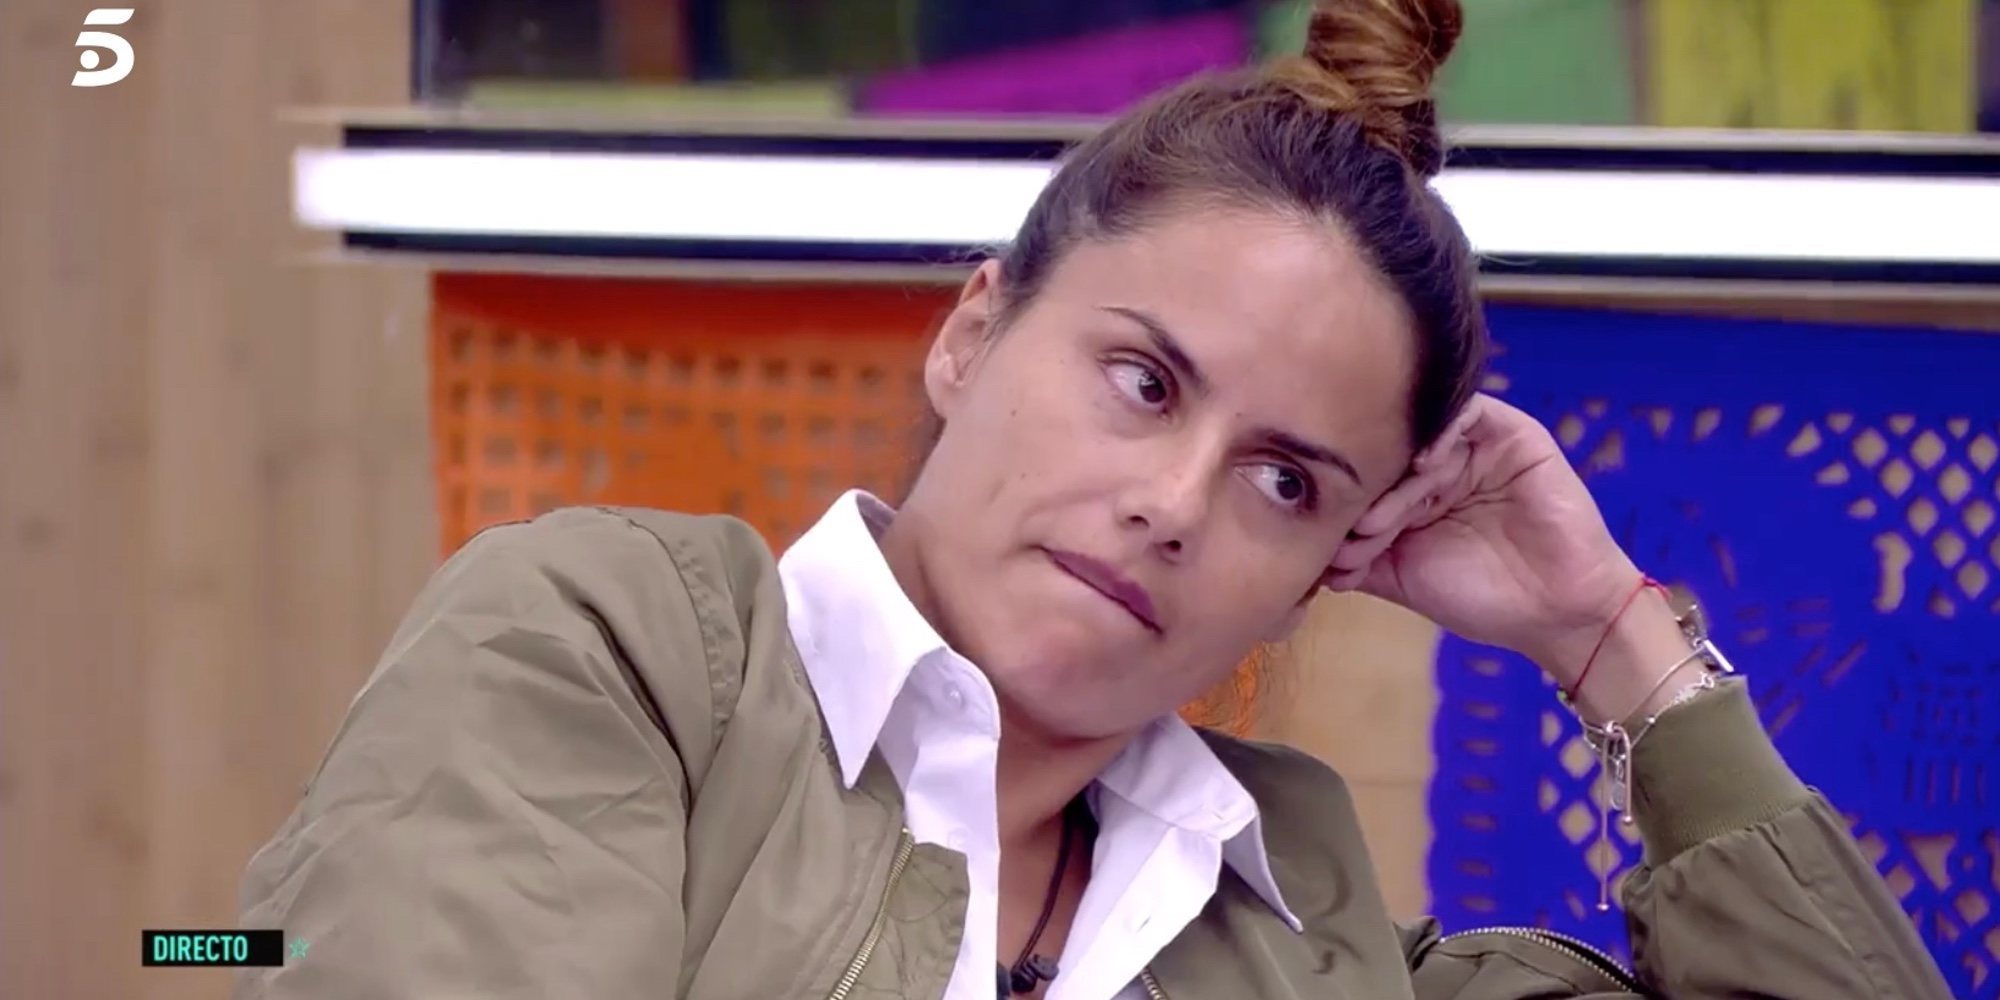 Mónica Hoyos intenta pactar su victoria en 'GH VIP 6' a cambio de dinero